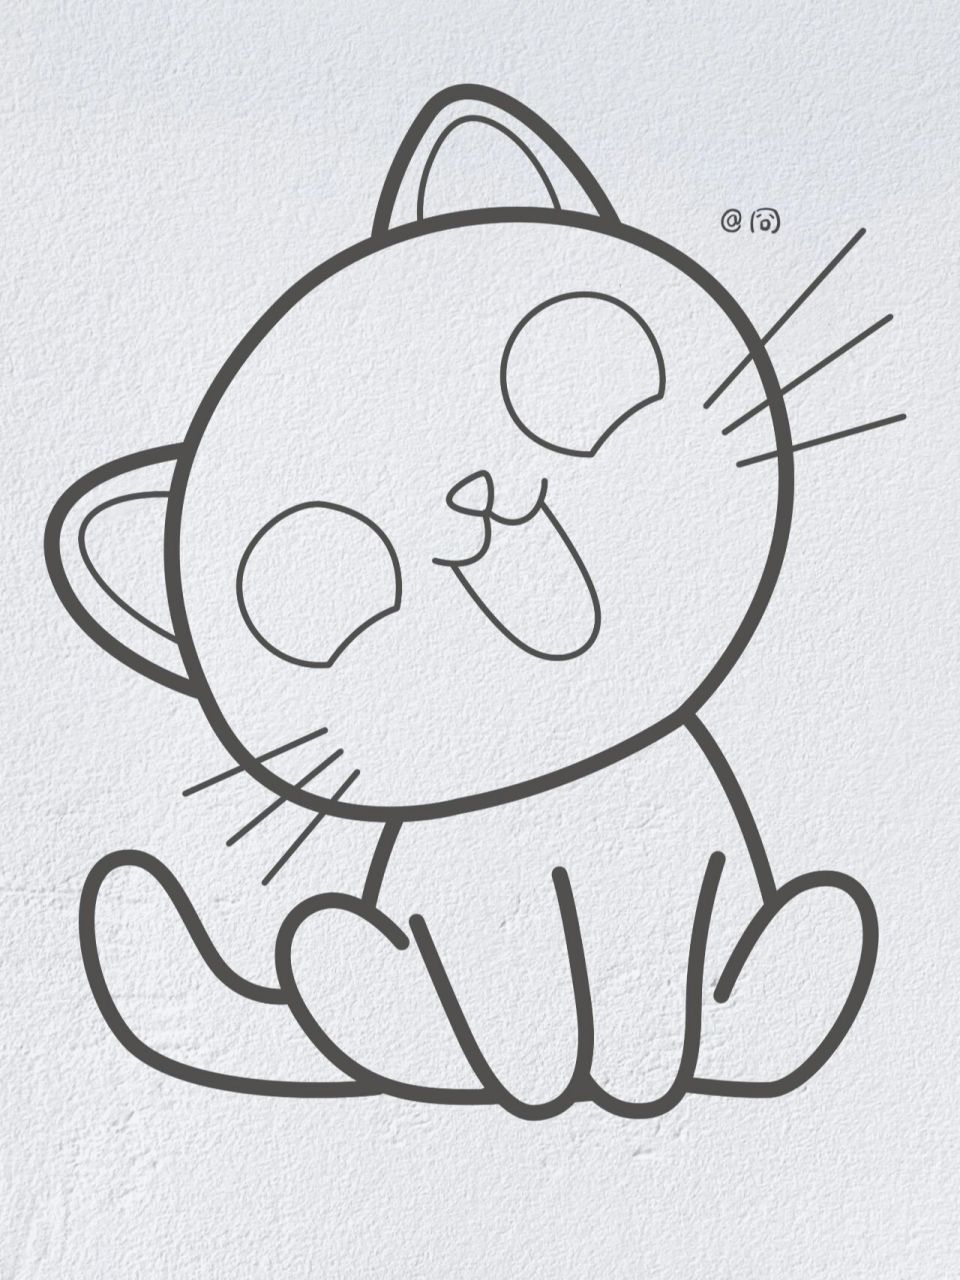 小猫简笔画 简单可爱图片